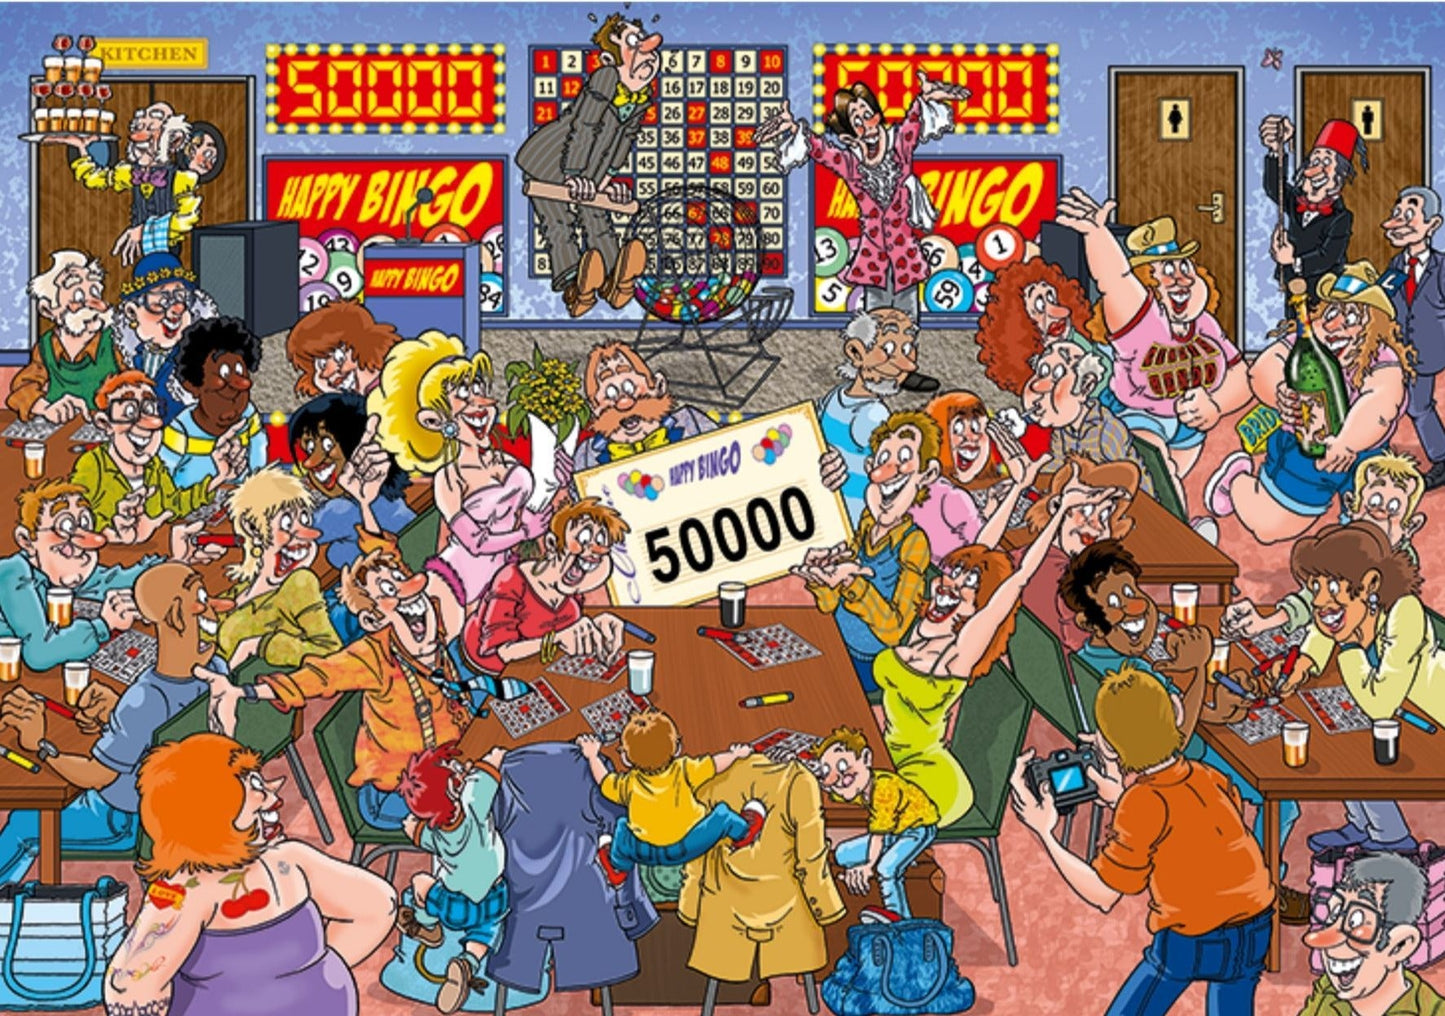 Wasgij Mystery 19 Bingo Blunder! 1000 Piece Jigsaw Puzzle